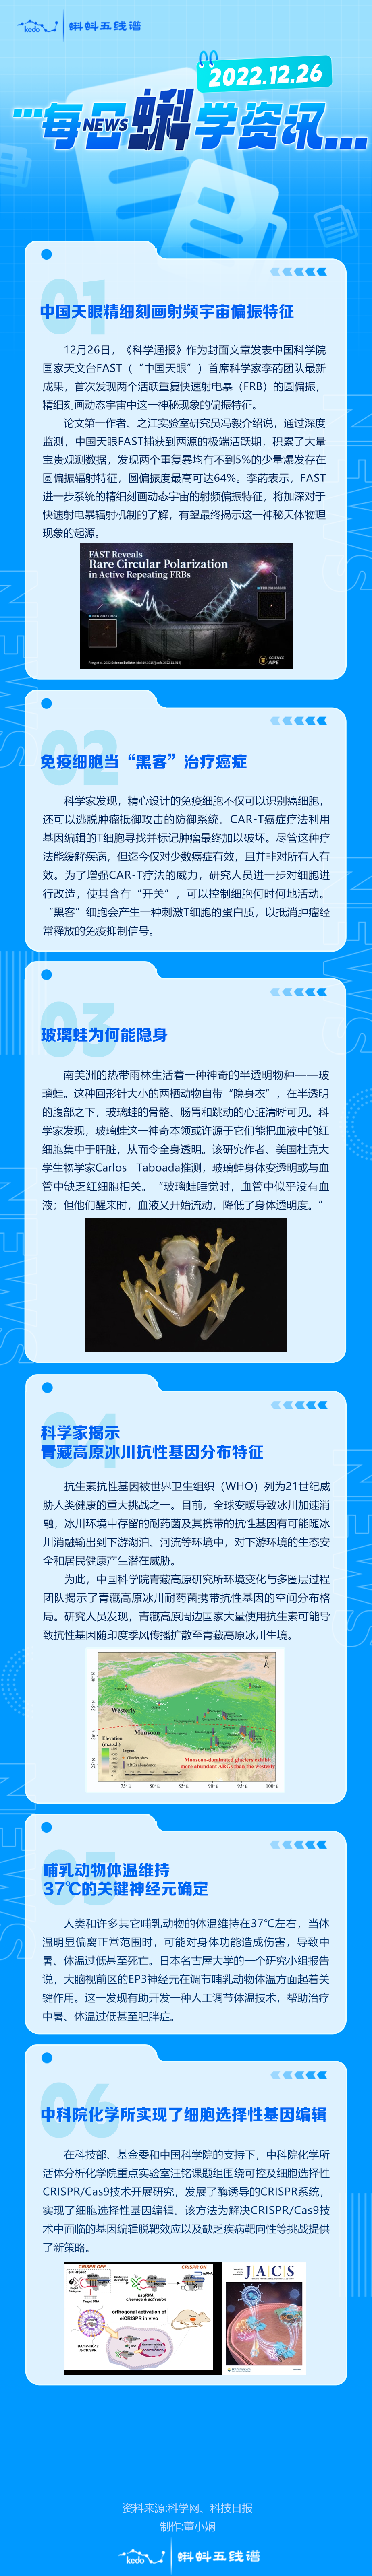 每日蝌学资讯 | 中国天眼精细刻画射频宇宙偏振特征；免疫细胞当“黑客”治疗癌症